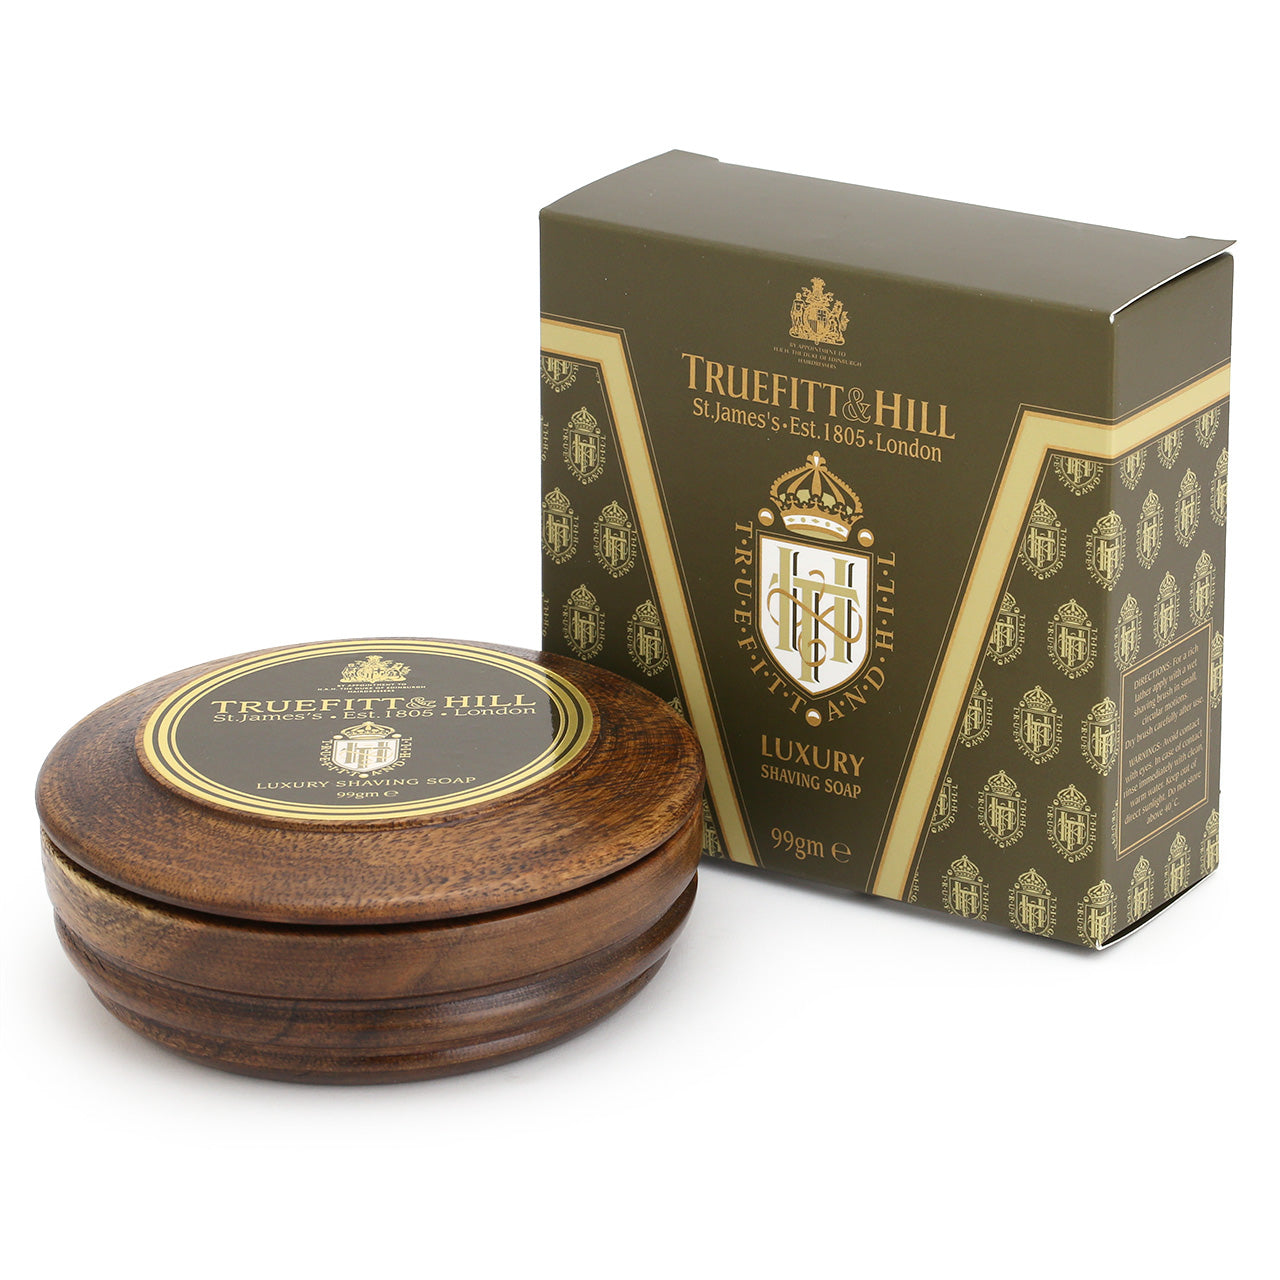 Truefitt & Hill Luxury shaving soap in a wooden bowl